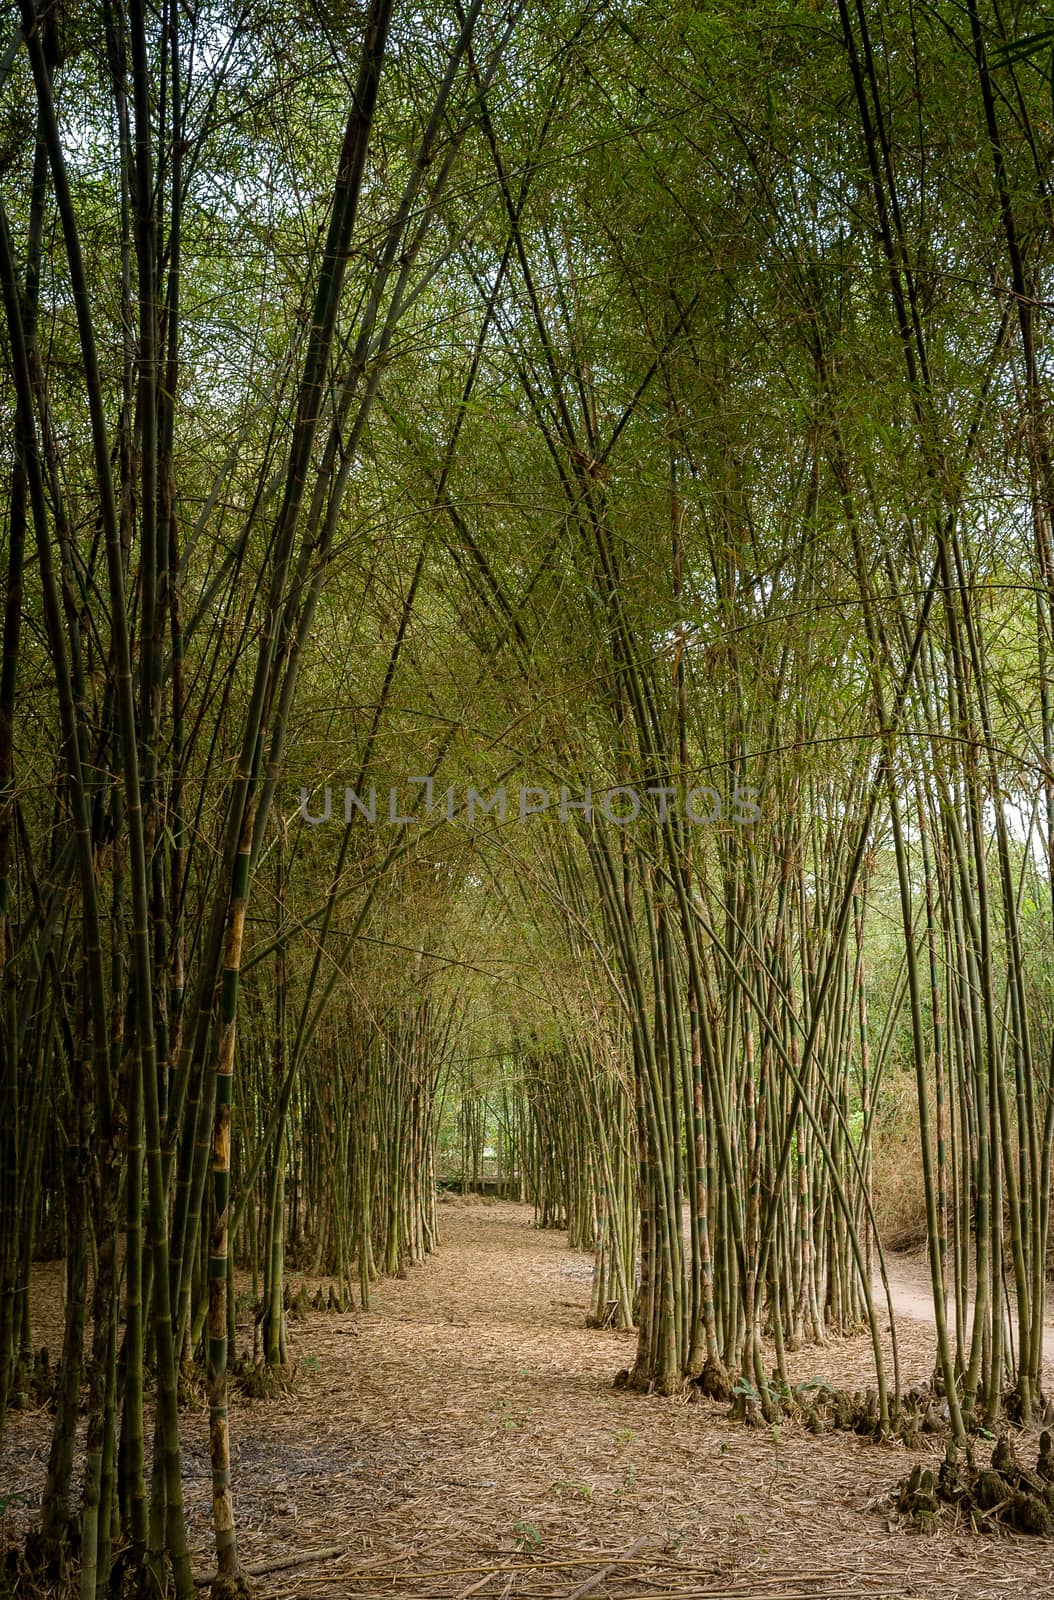 TRANGBANG DISTRICT - MAY 1: Bamboo Green Road at Trangbang district, May 1 2014 in Tayninh province, Viet Nam.